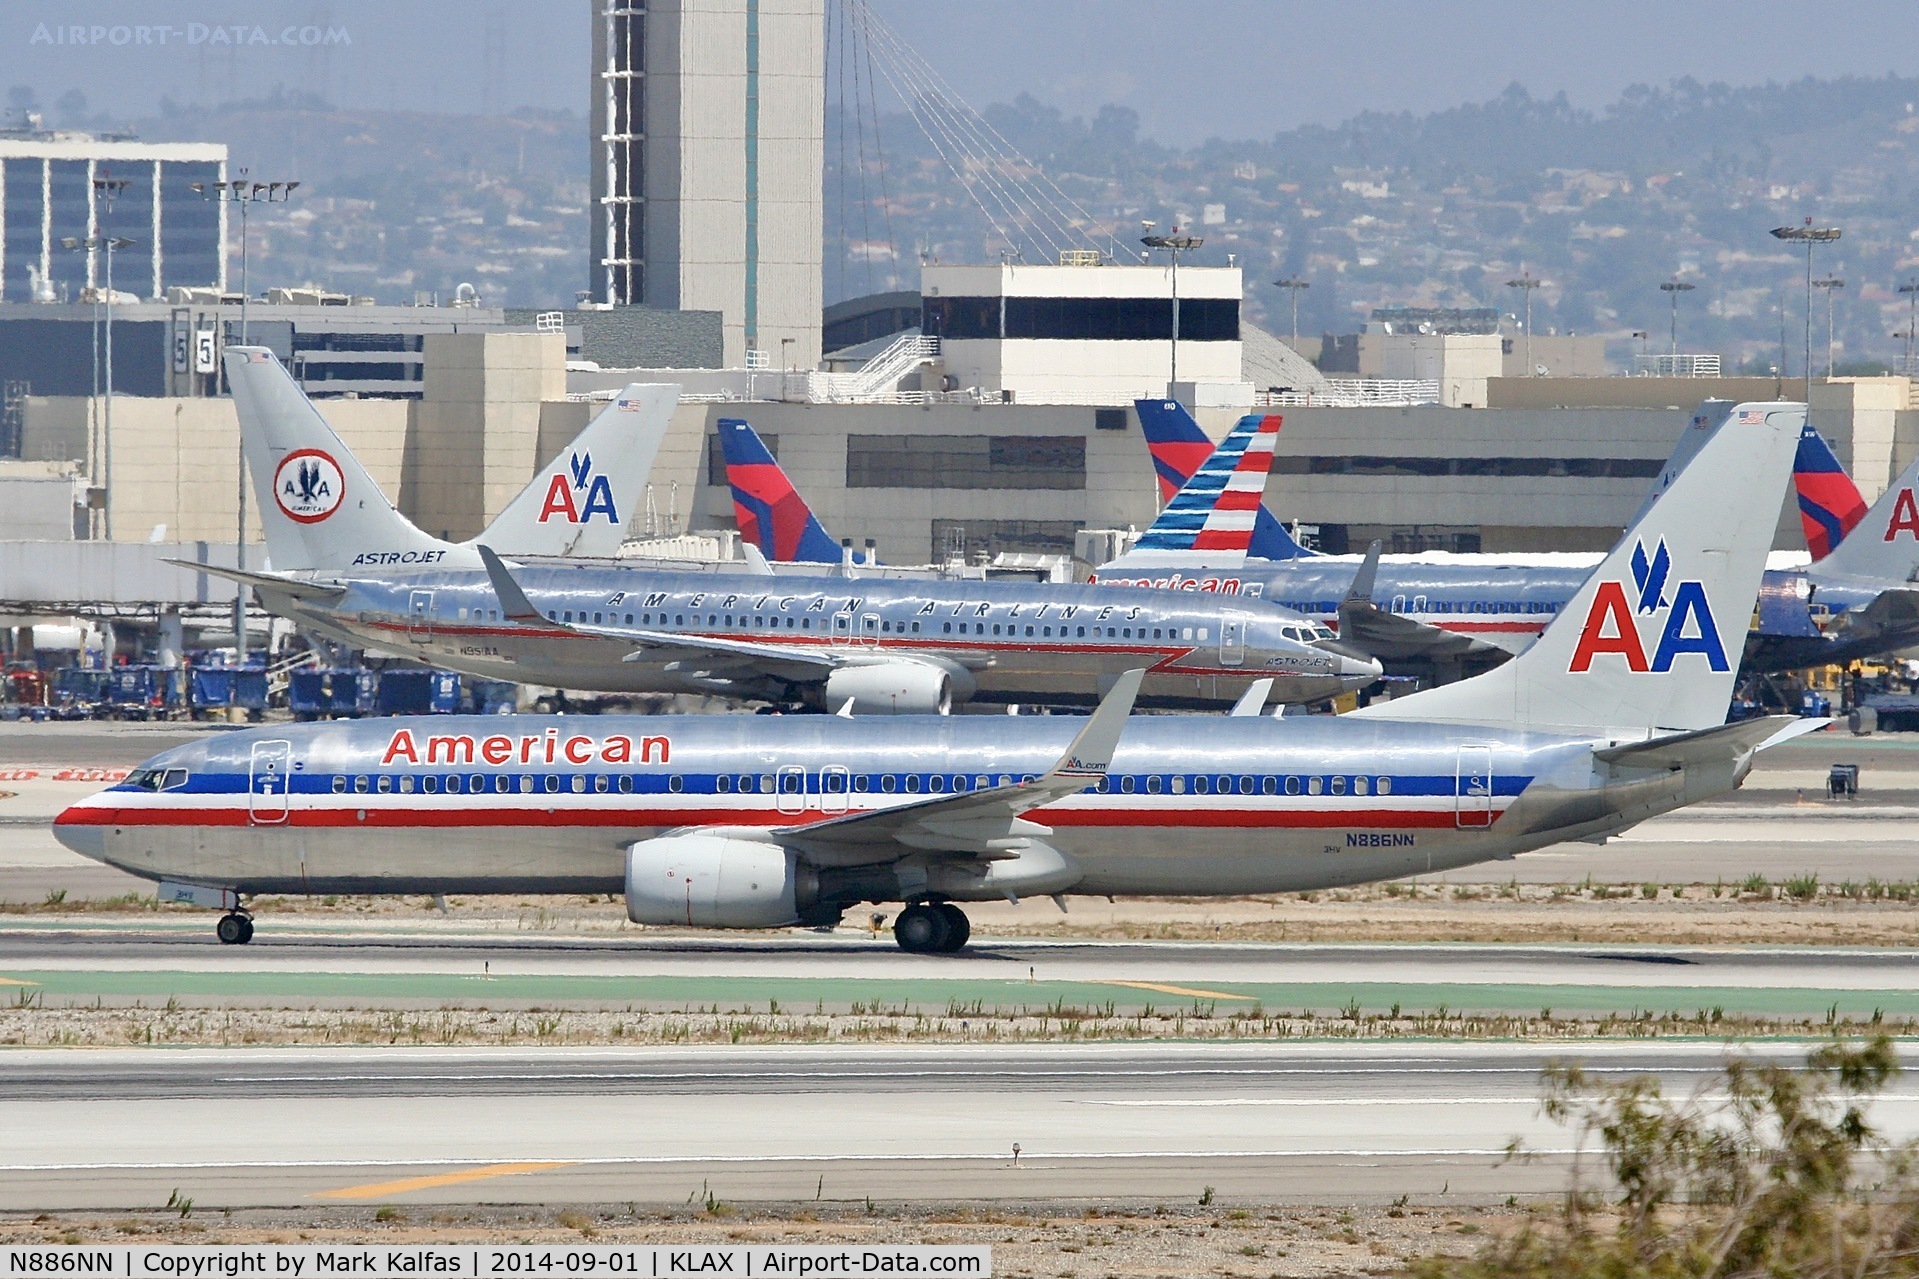 N886NN, 2012 Boeing 737-823 C/N 33223, American Boeing 737-823, N886AN arriving at LAX